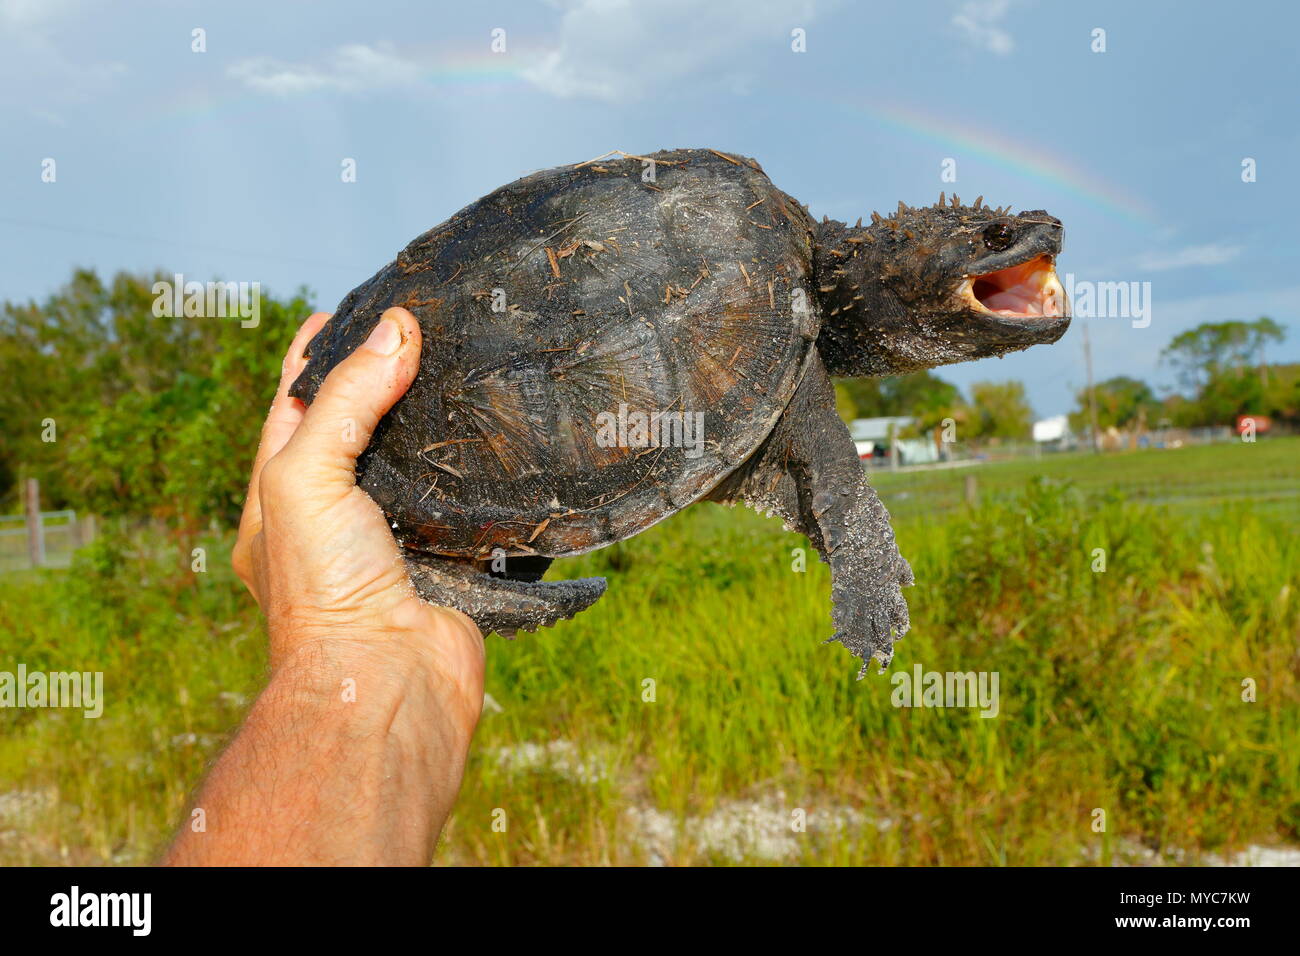 Ein Florida snapping Turtle, Chelydra s. Osceola, von Hand, wo auf einer Straße gefunden. Stockfoto